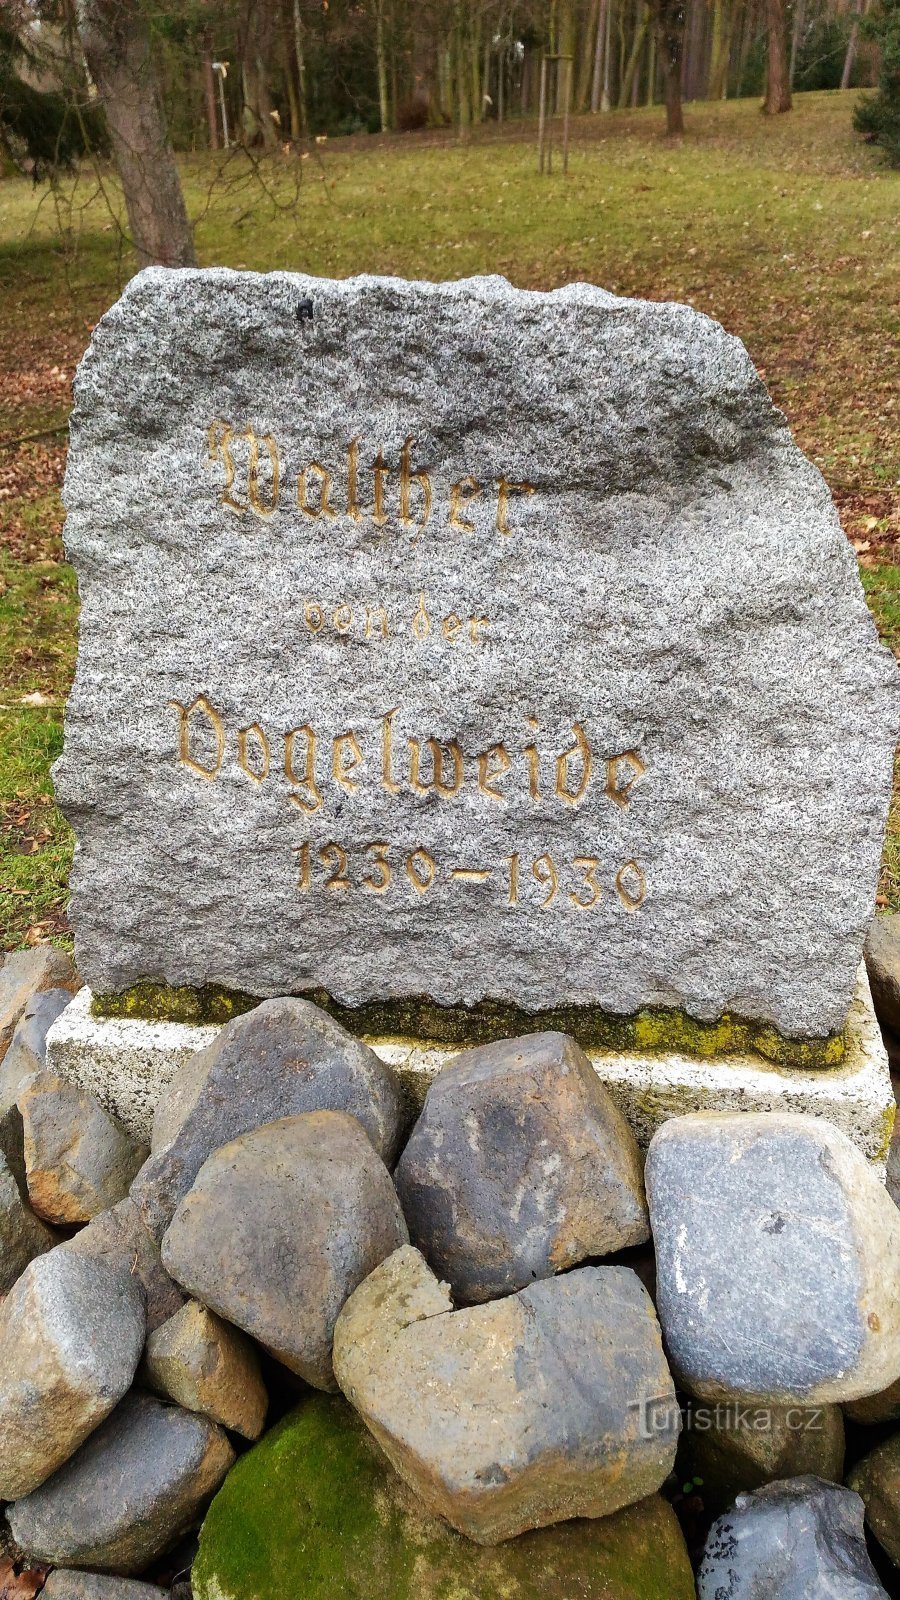 Monument to Walther von der Vogelweide in the City Park in Česká Lípa